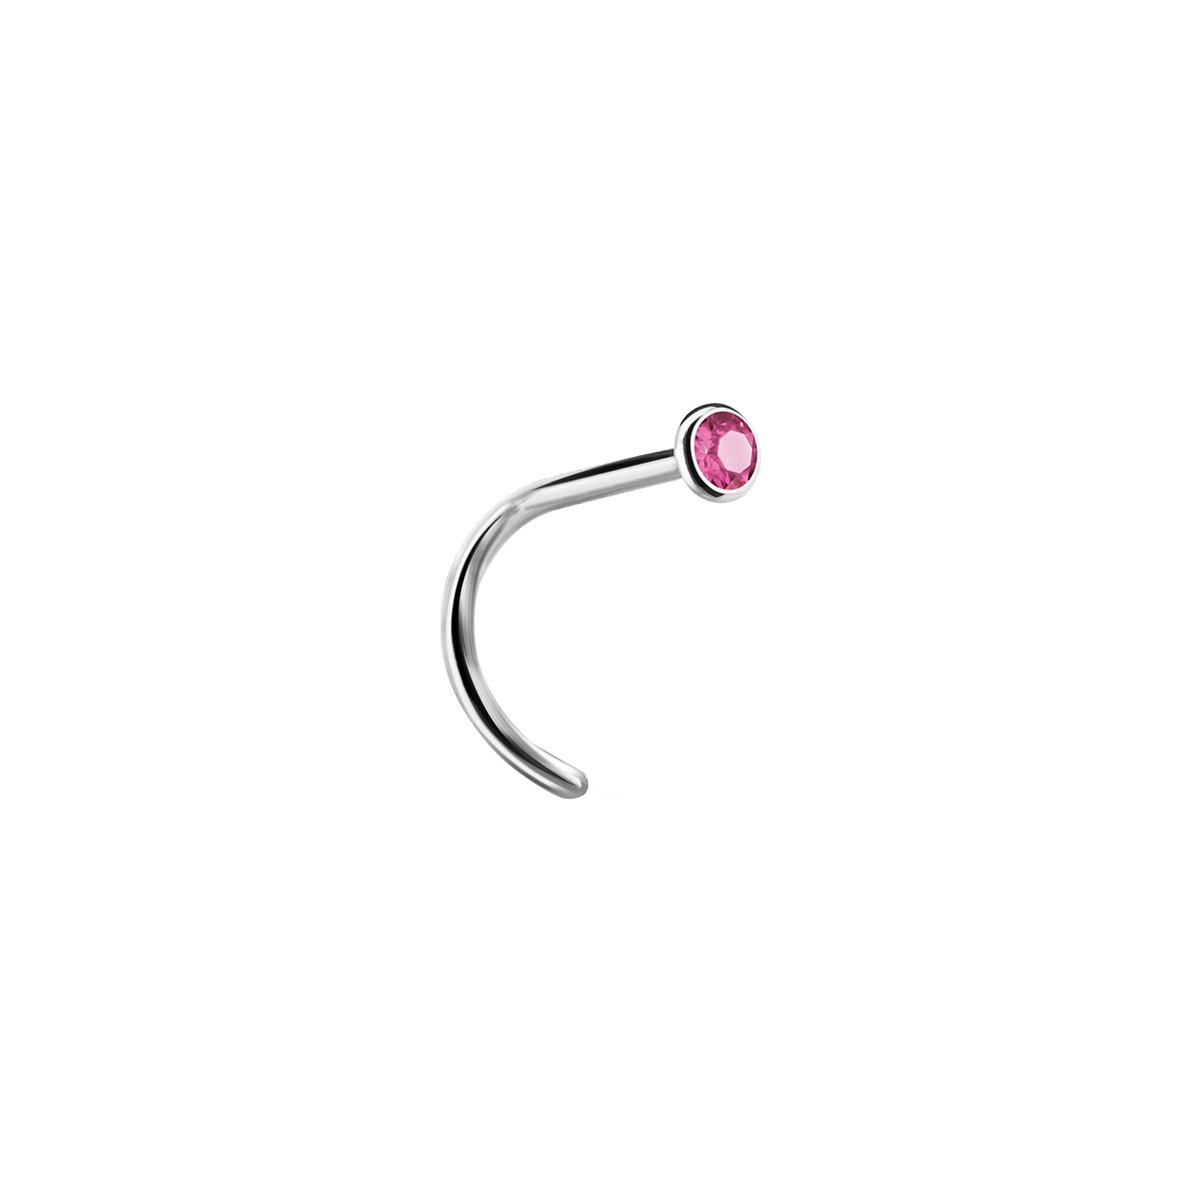 Nässmycke - Nässkruv i silvrigt kirurgiskt stål - Liten rosa kristall